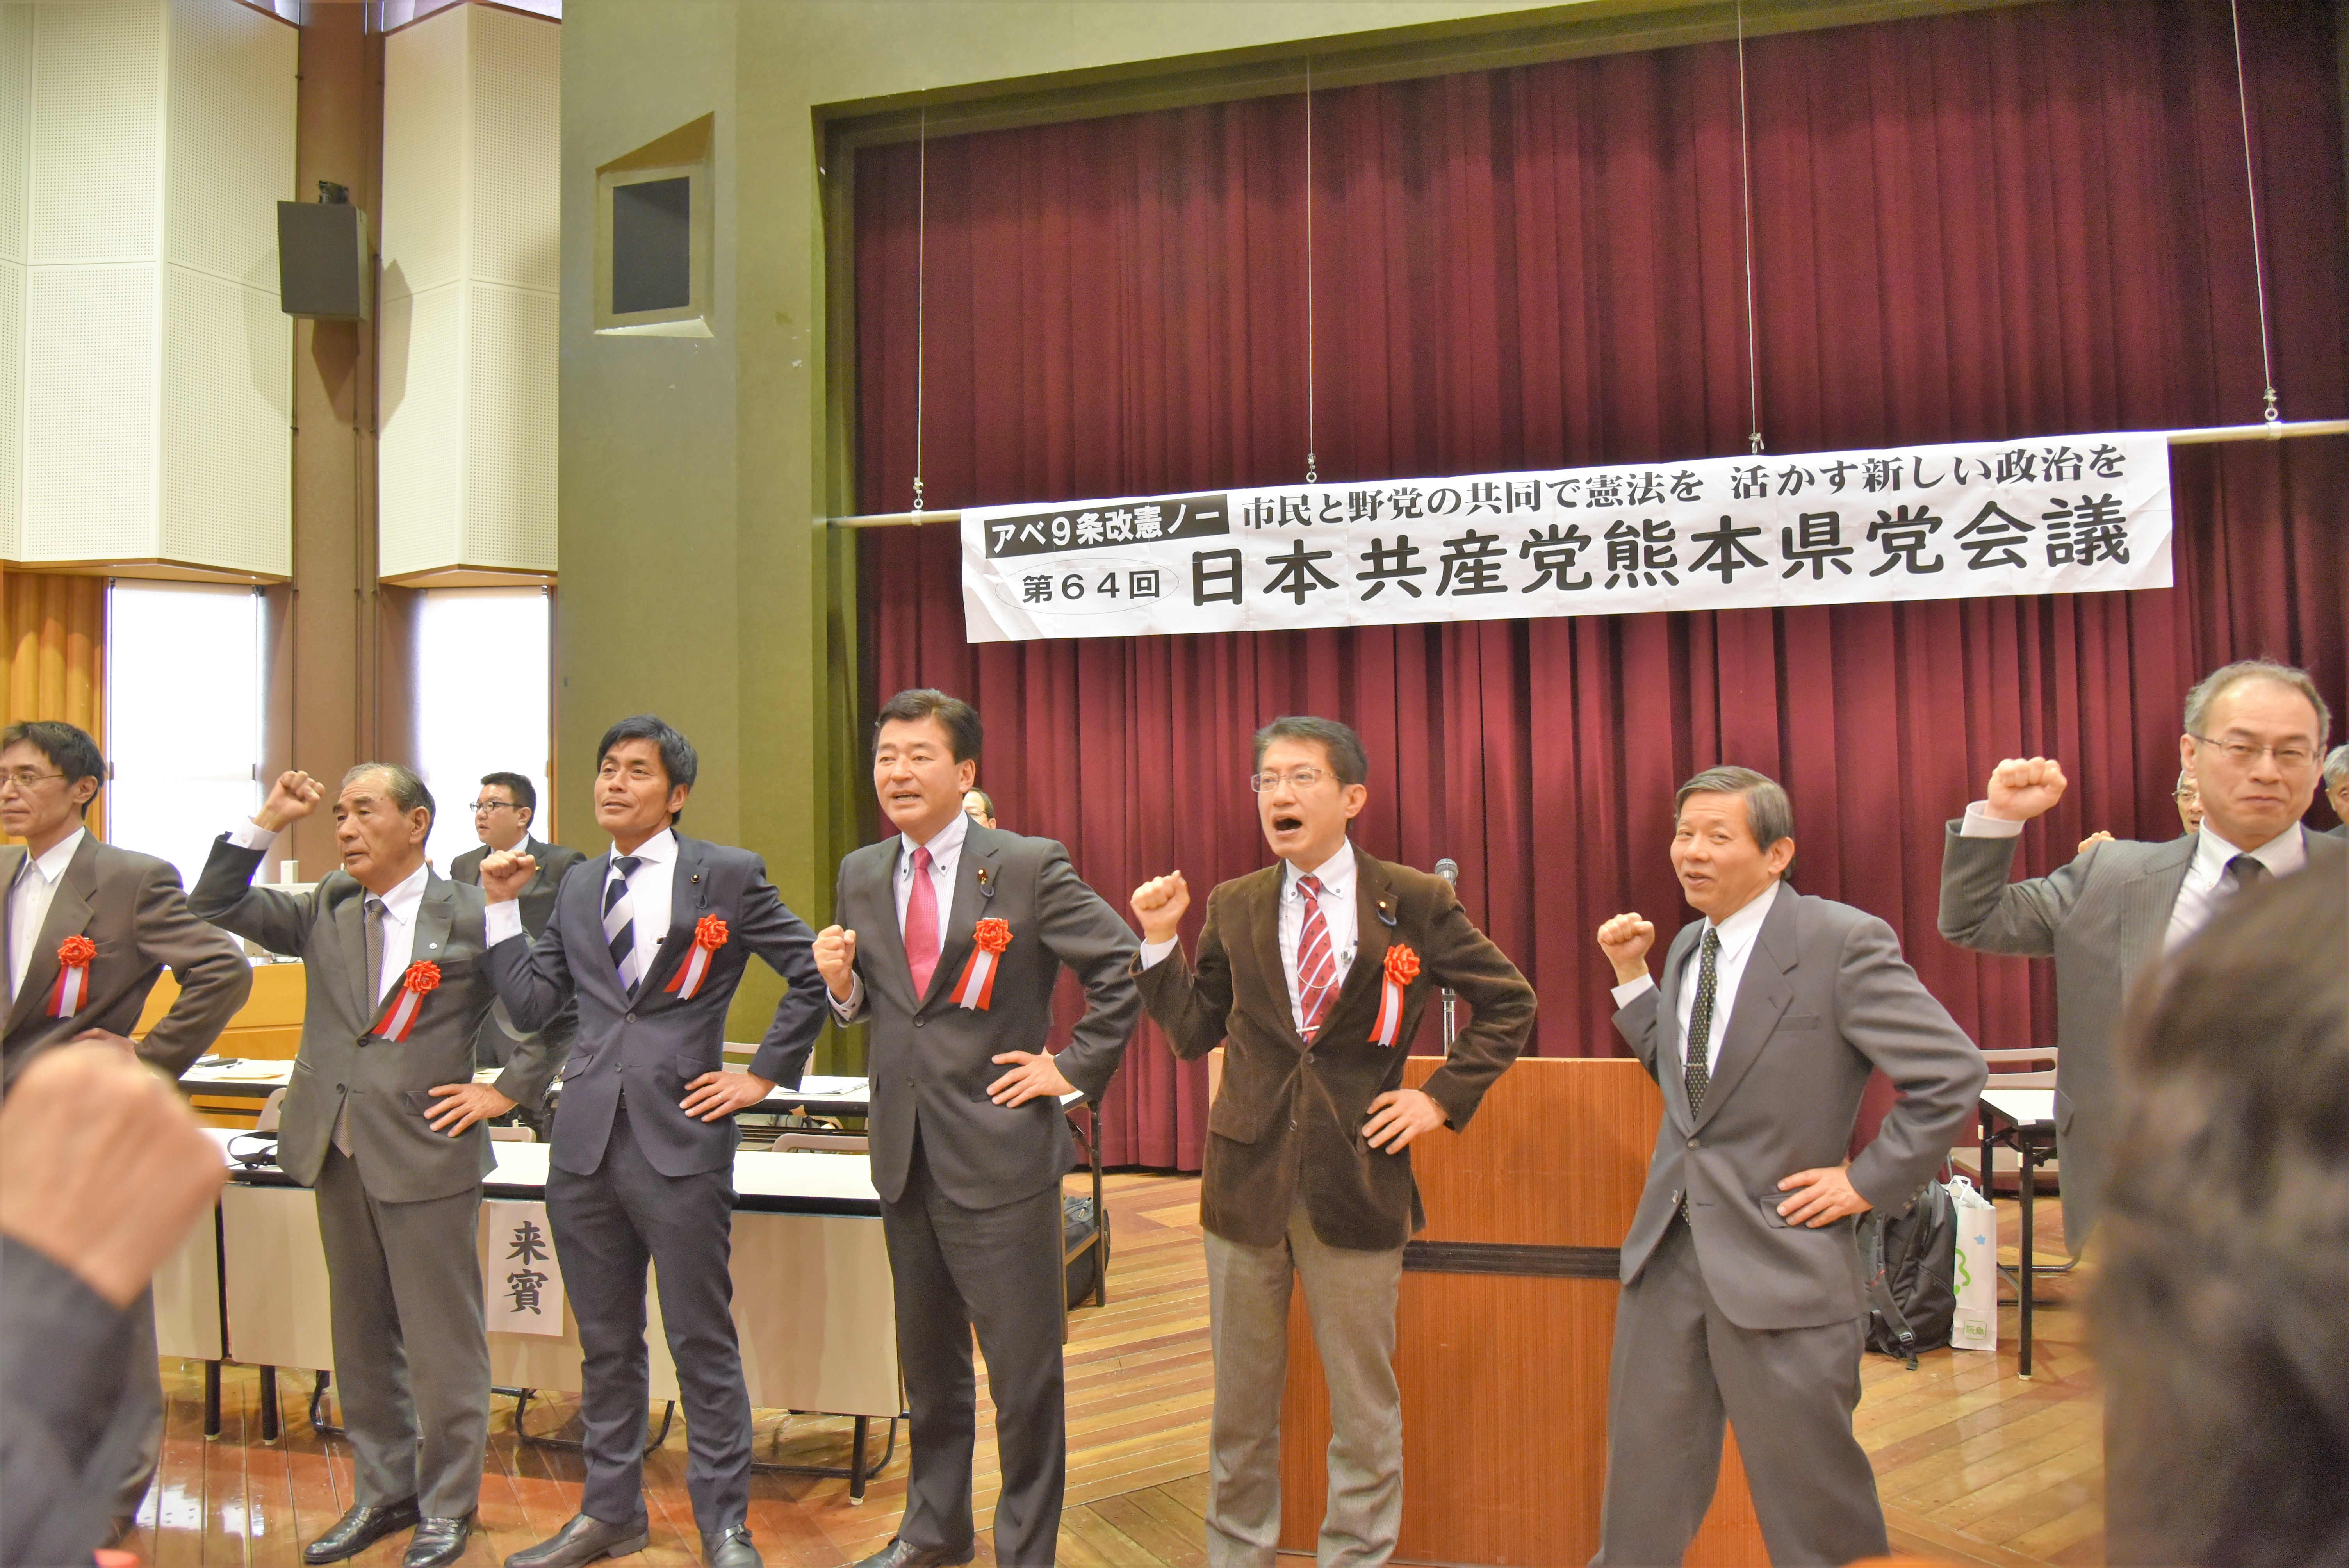 2-25sun 県党会議 142 (3)